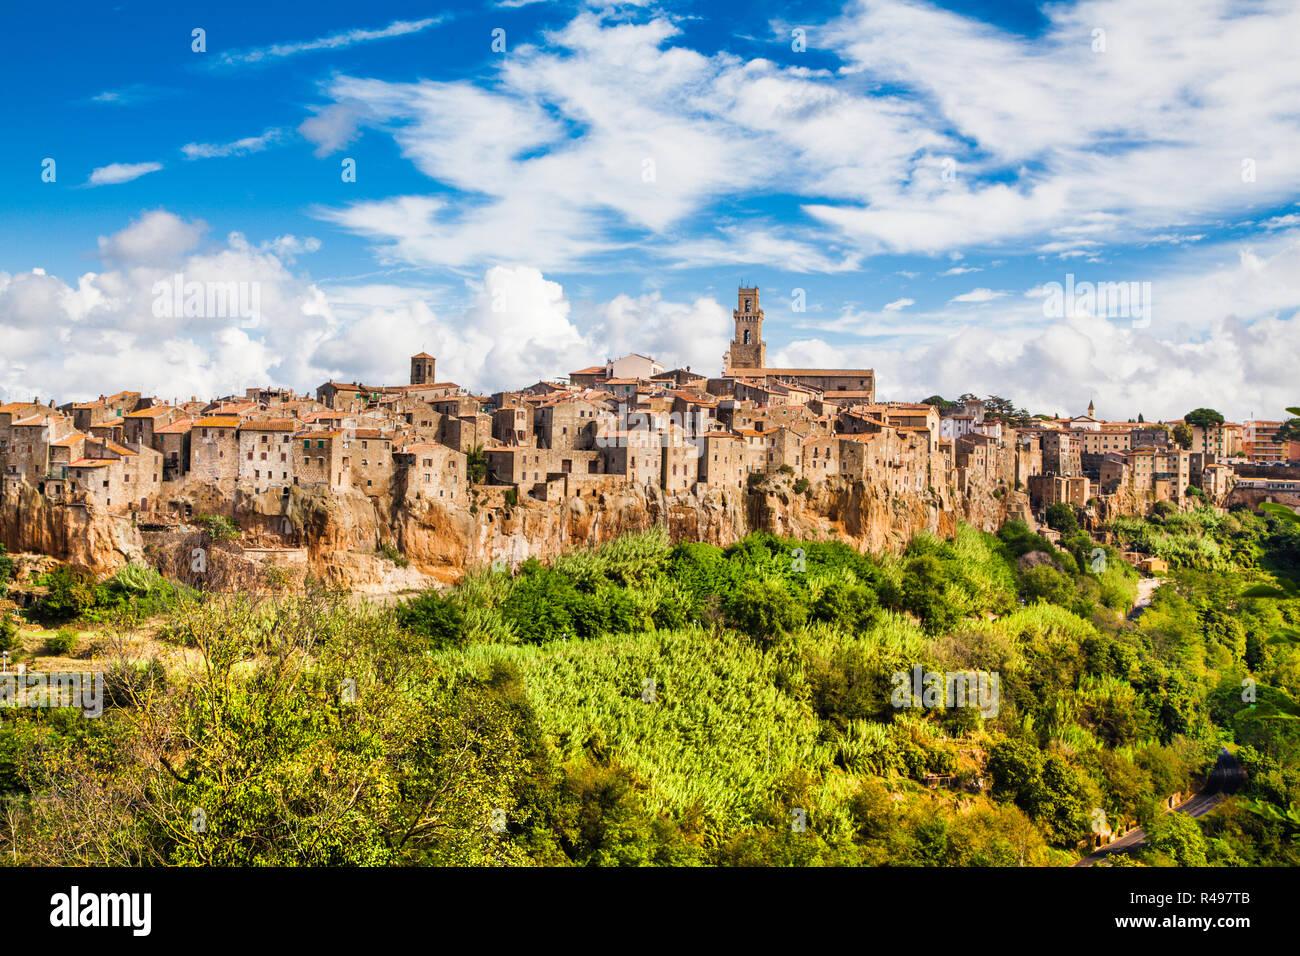 Vista panoramica della città medievale di Pitigliano in Toscana, Italia Foto Stock